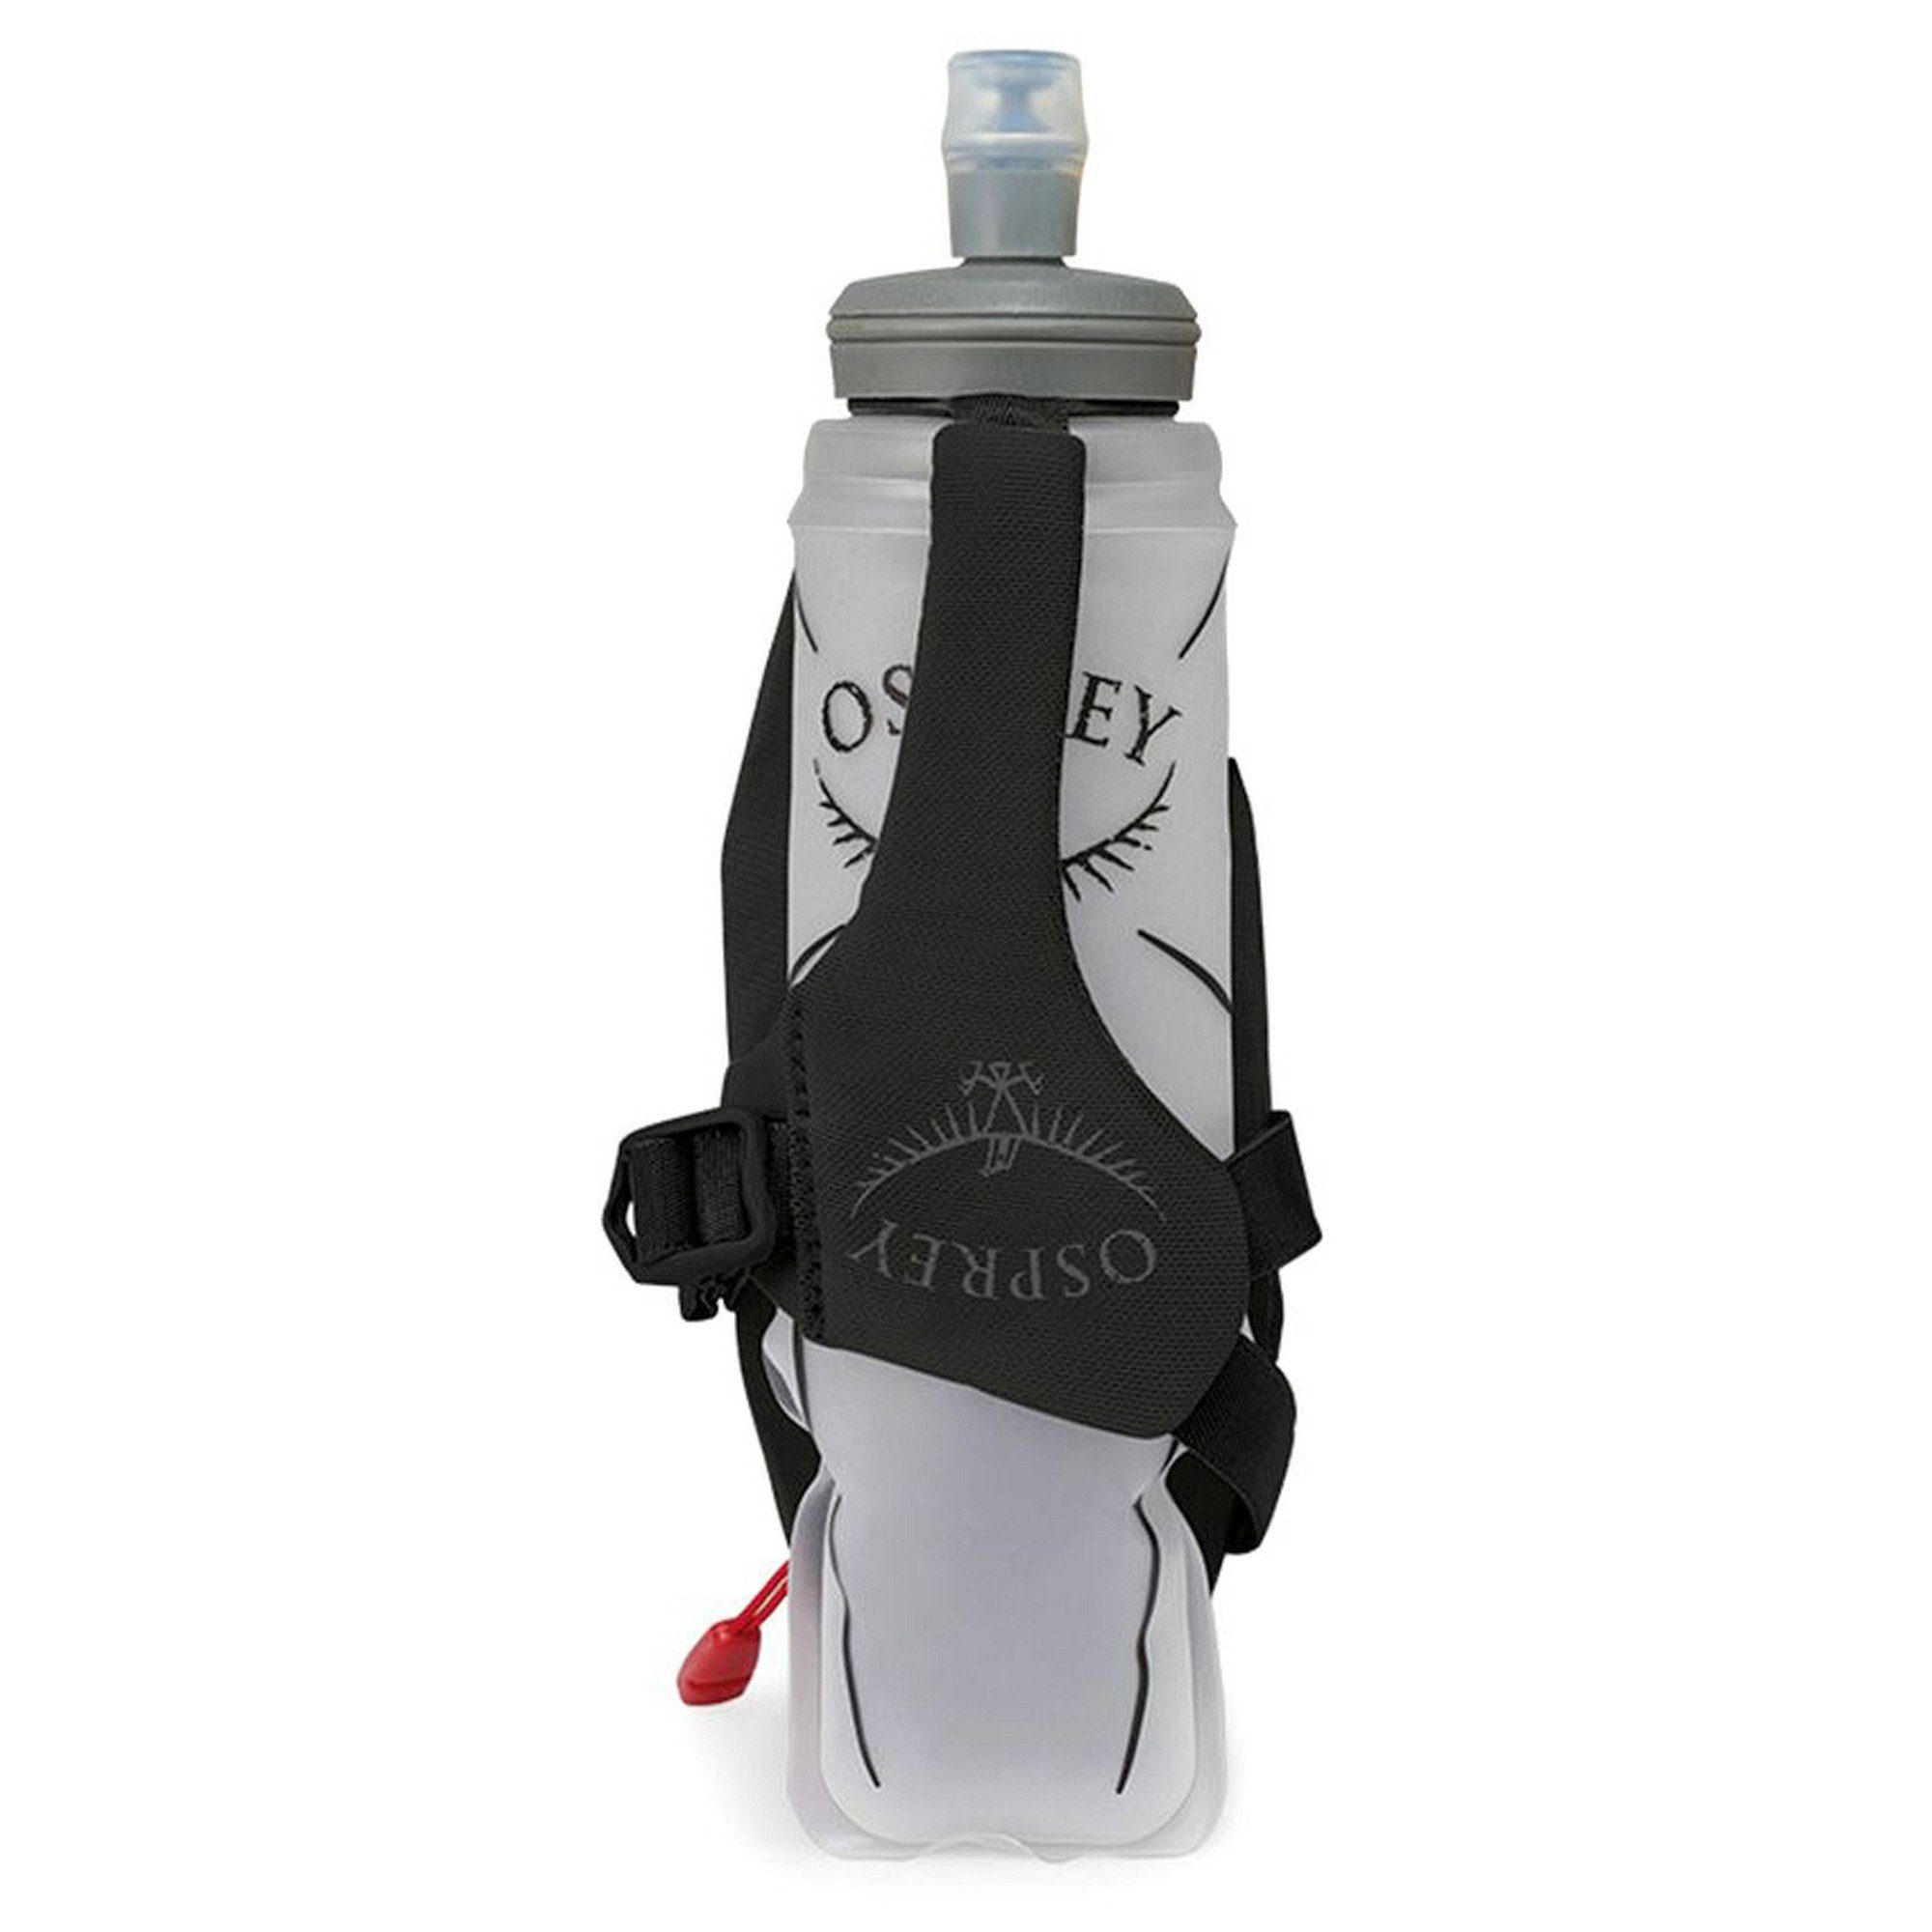 Duro Osprey Trinkflasche - Dyna Handheld Trinkflaschenhalter 2